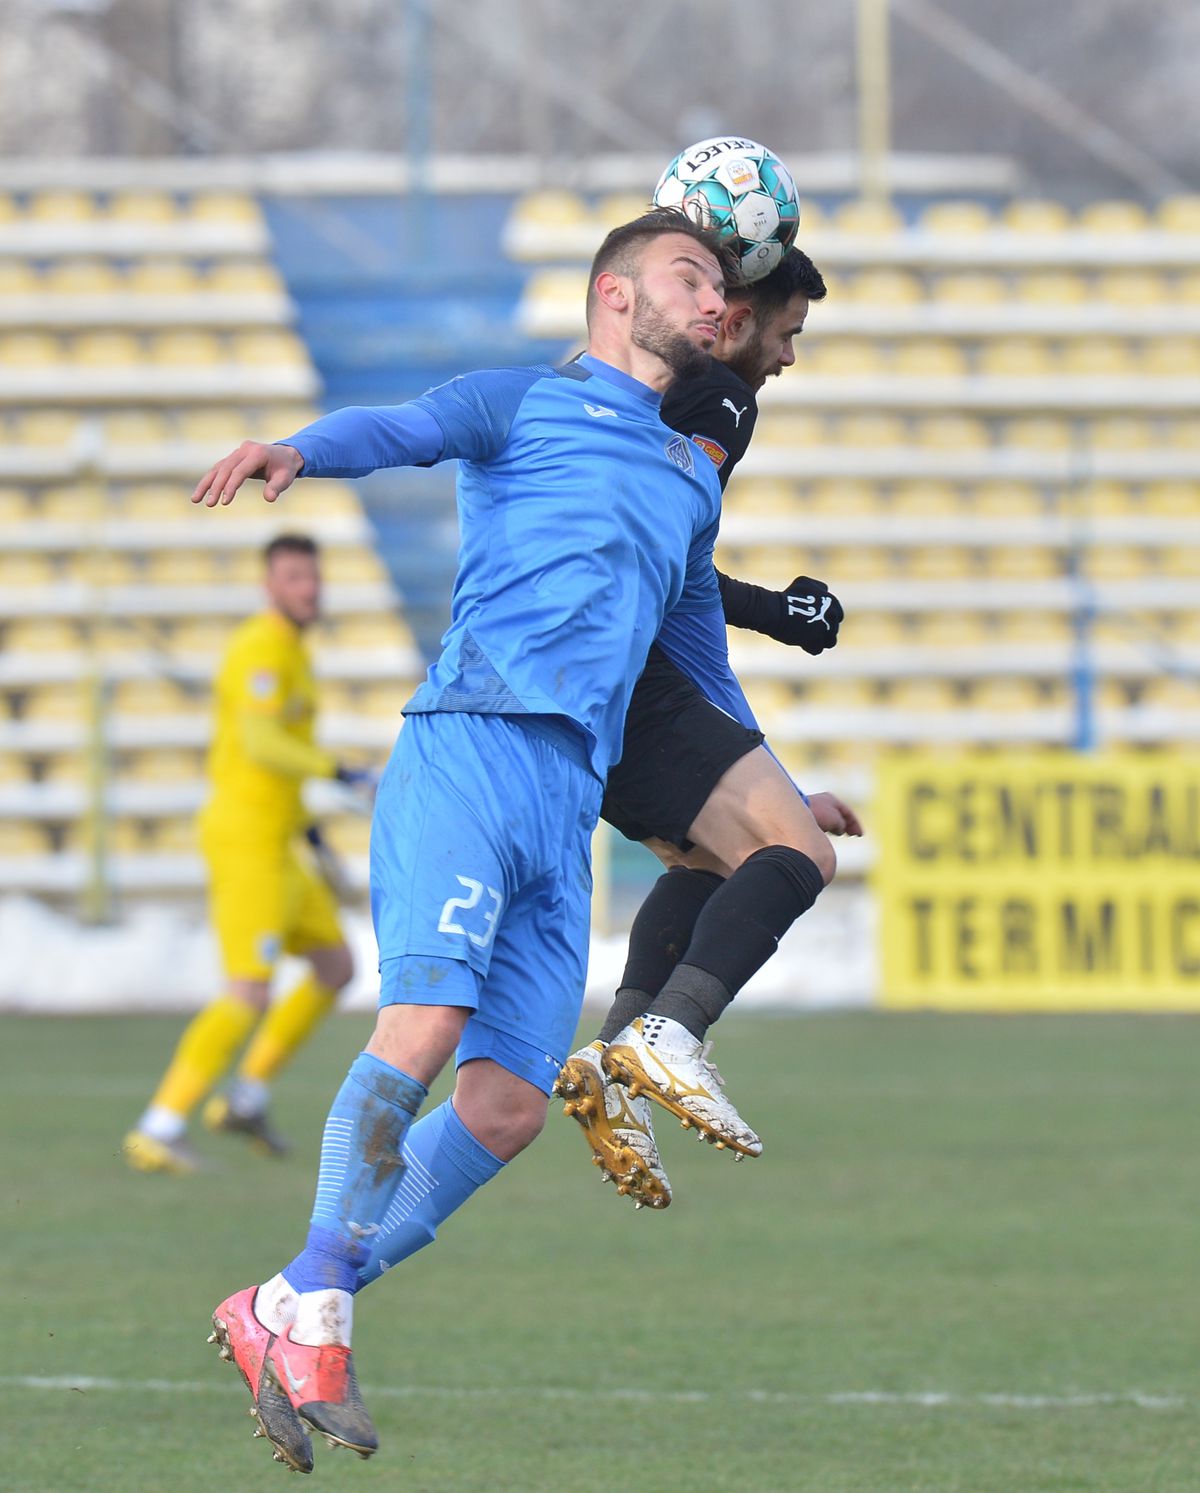 ACADEMICA CLINCENI- CRAIOVA 0-0. Ouzounidis, la fel ca Papură! Craiova face egal la debutul grecului în Liga 1